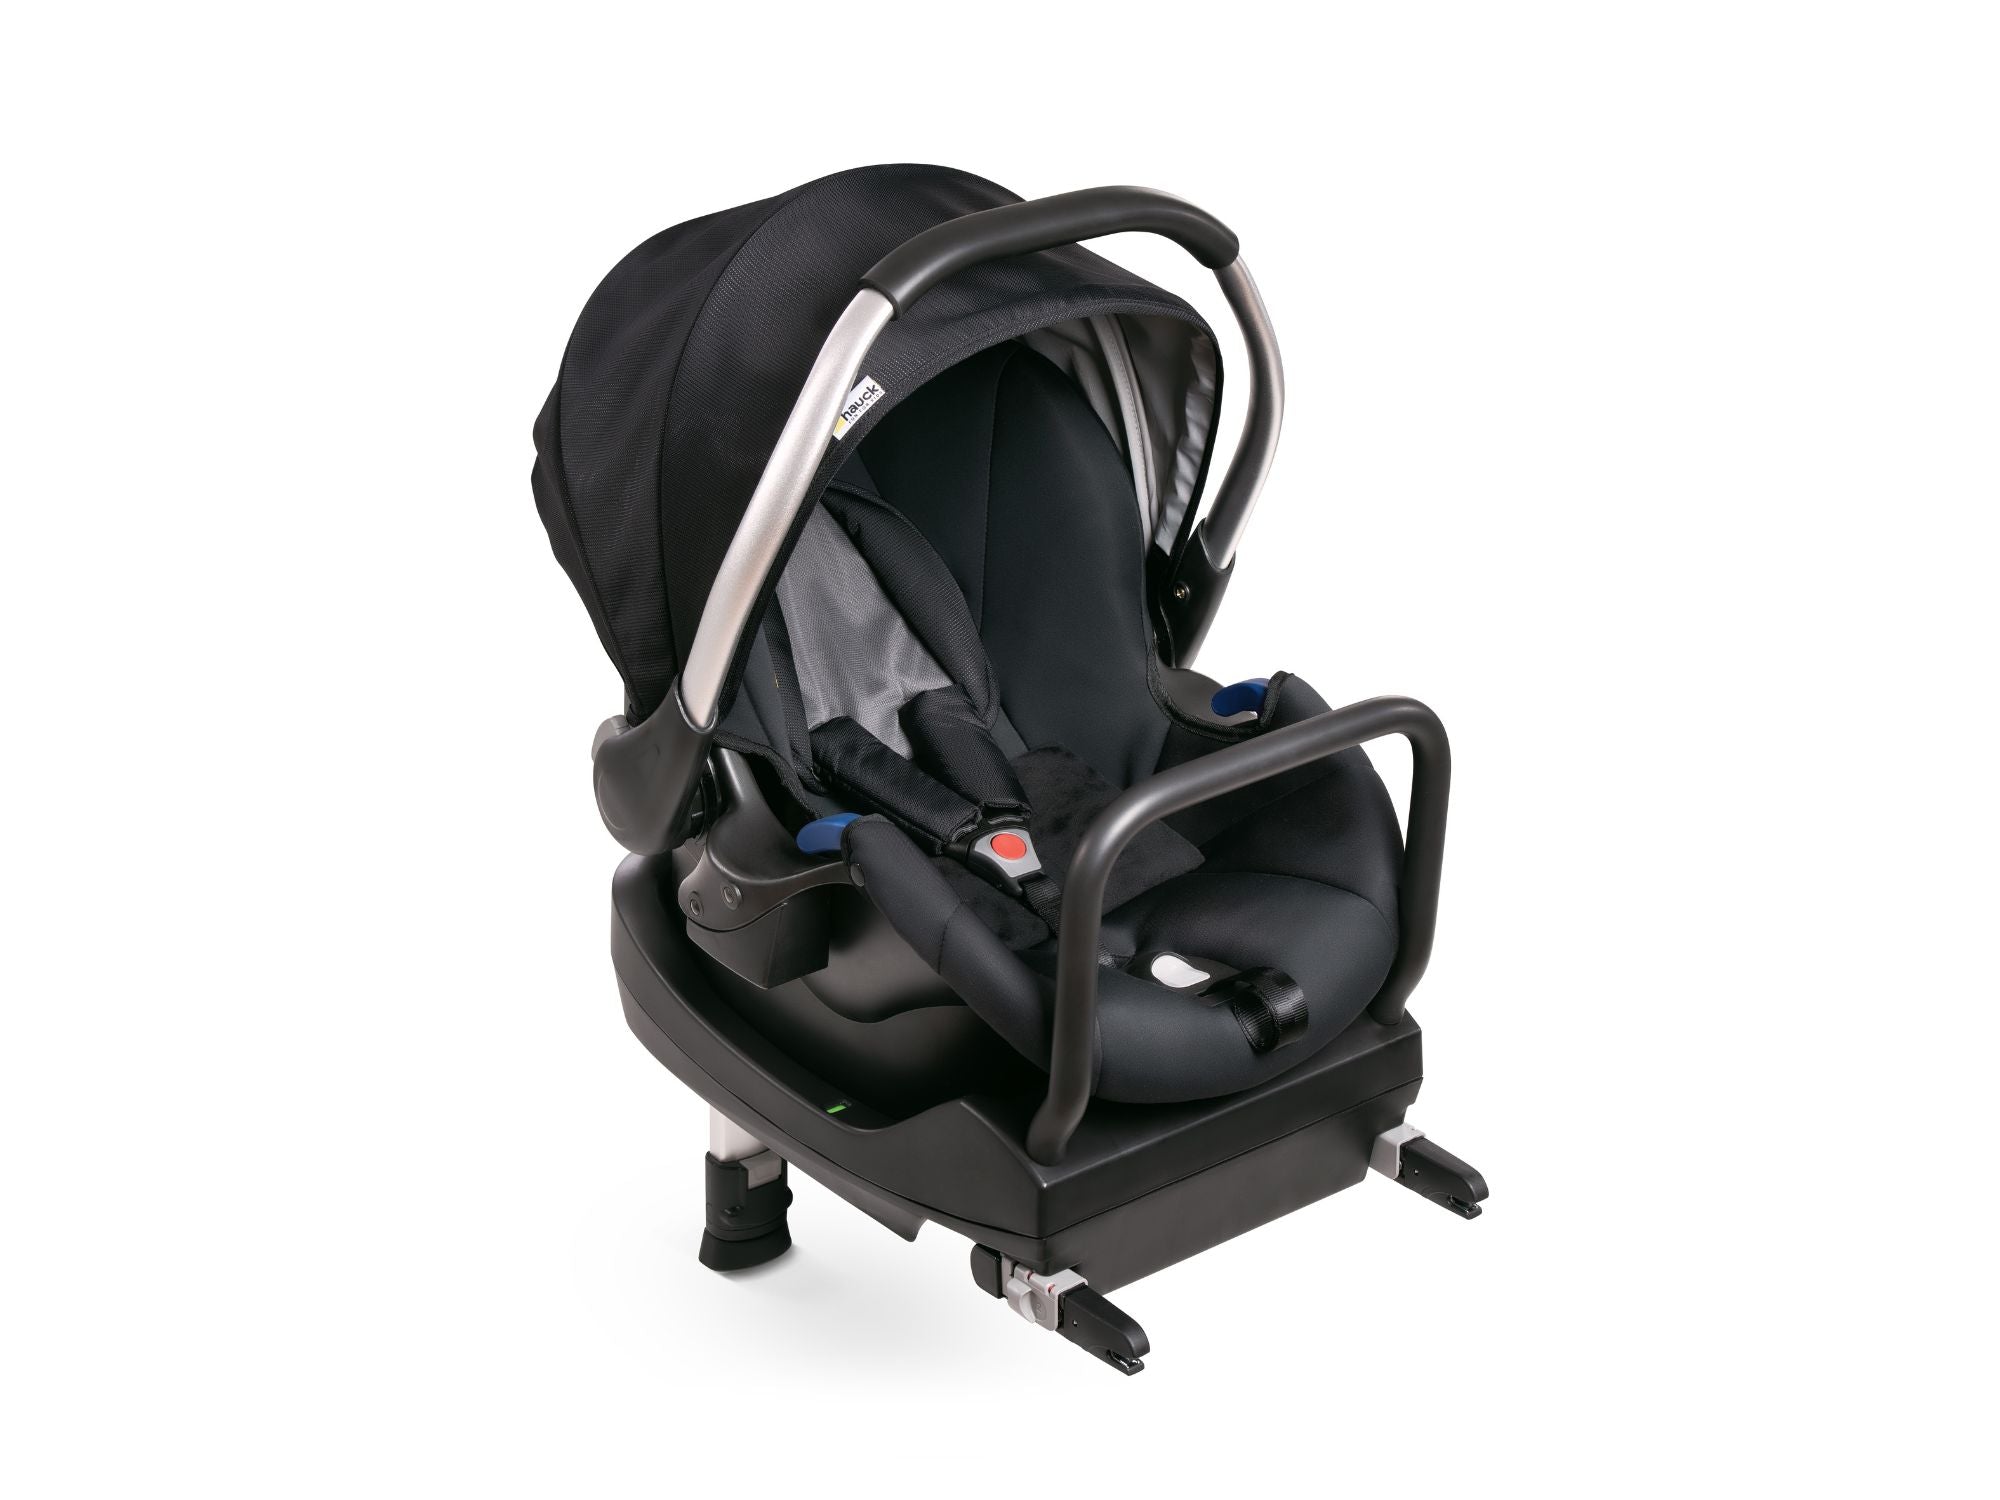 Hauck Comfort Fix Infant Car Seat